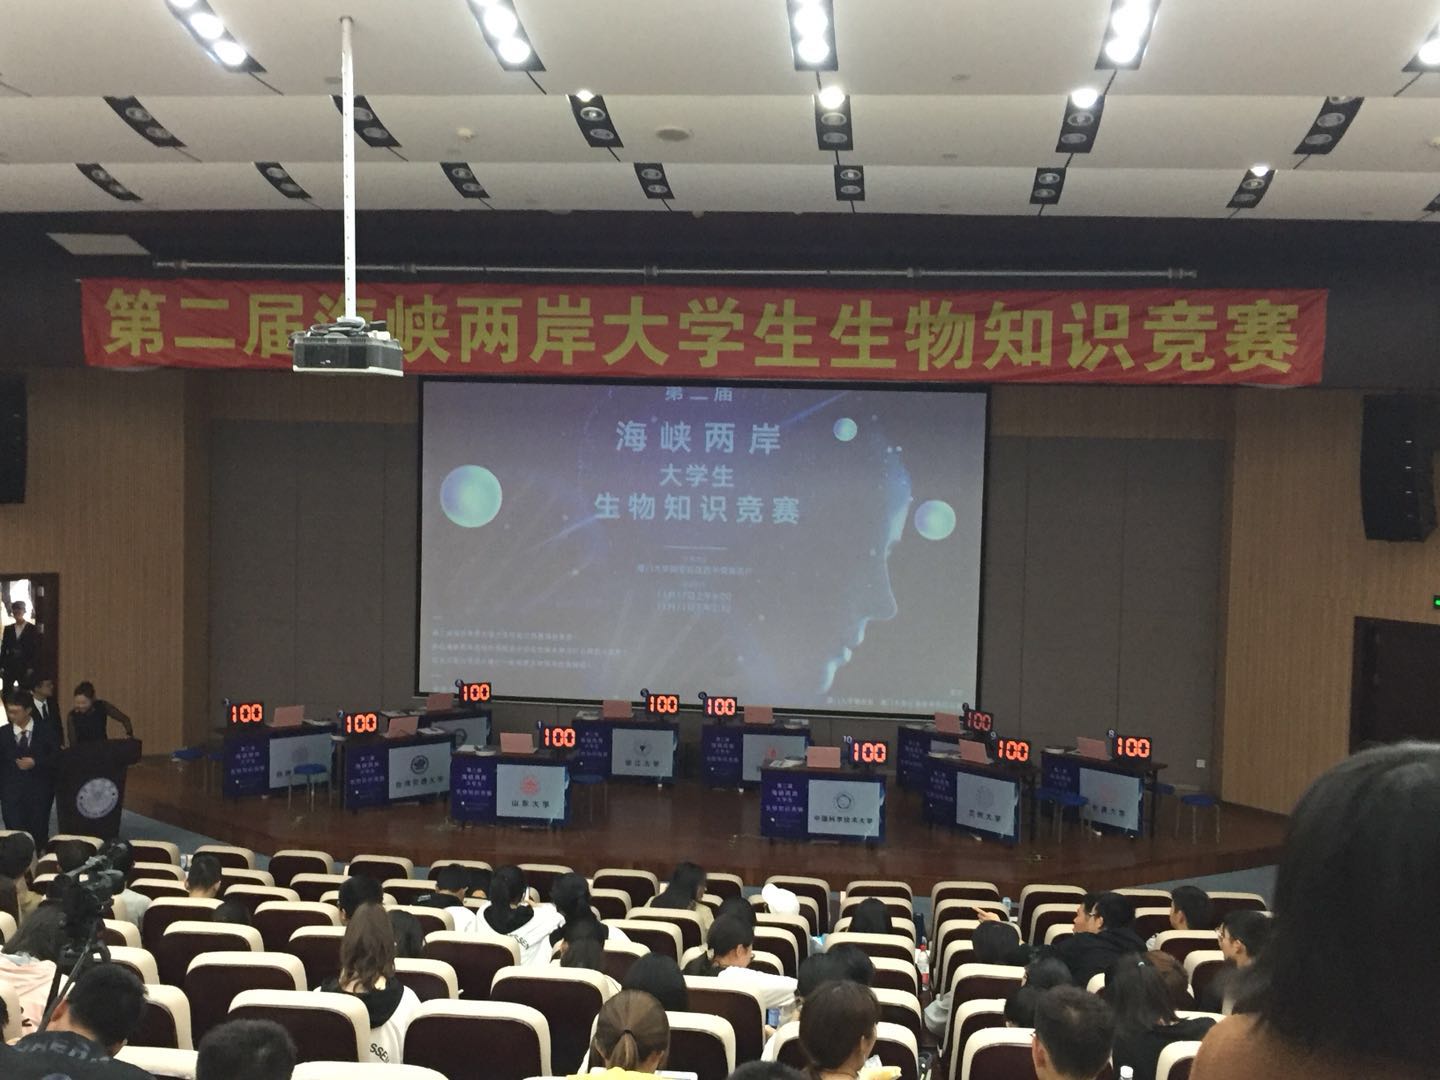 翡之翠文化上海专业出租智能抢答器电脑抢答器 无线智能抢答器